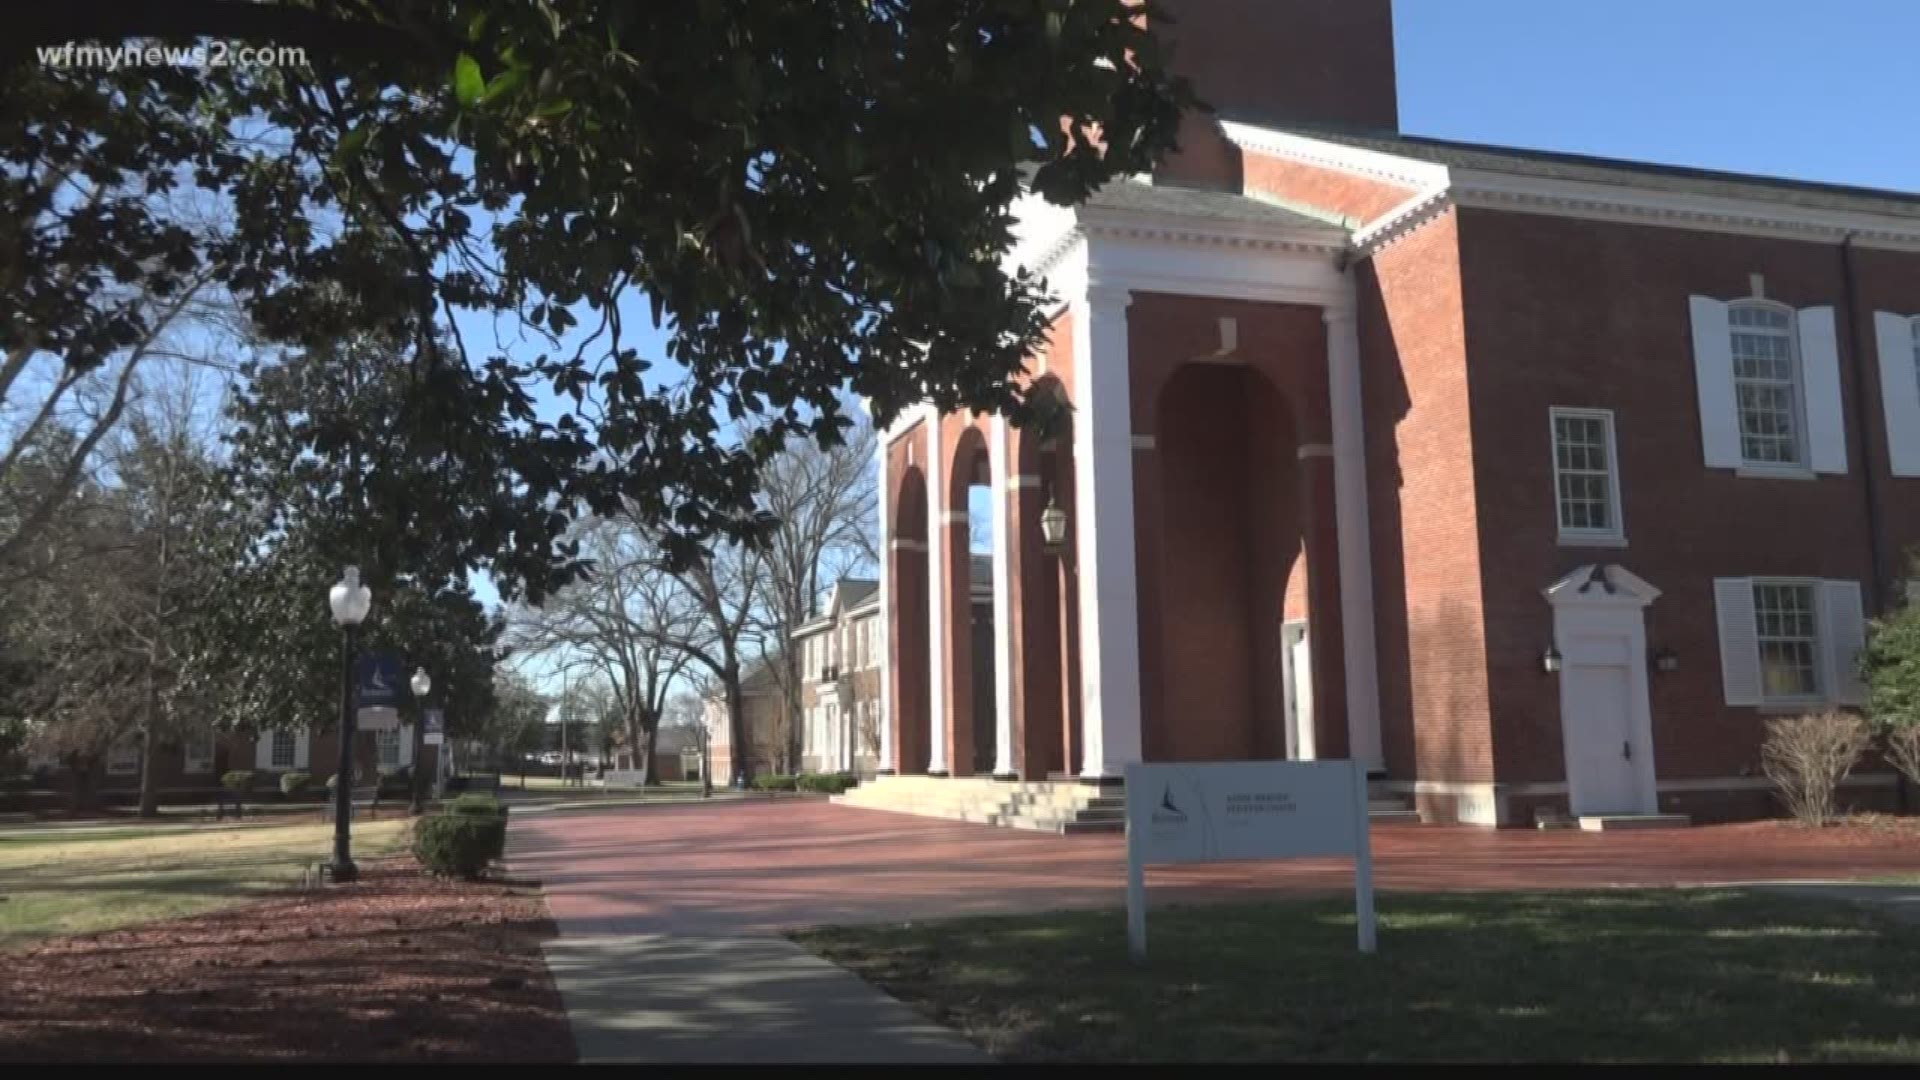 Despite raising almost 10 million dollars, Greensboro's Bennett College will still lose it's accreditation.